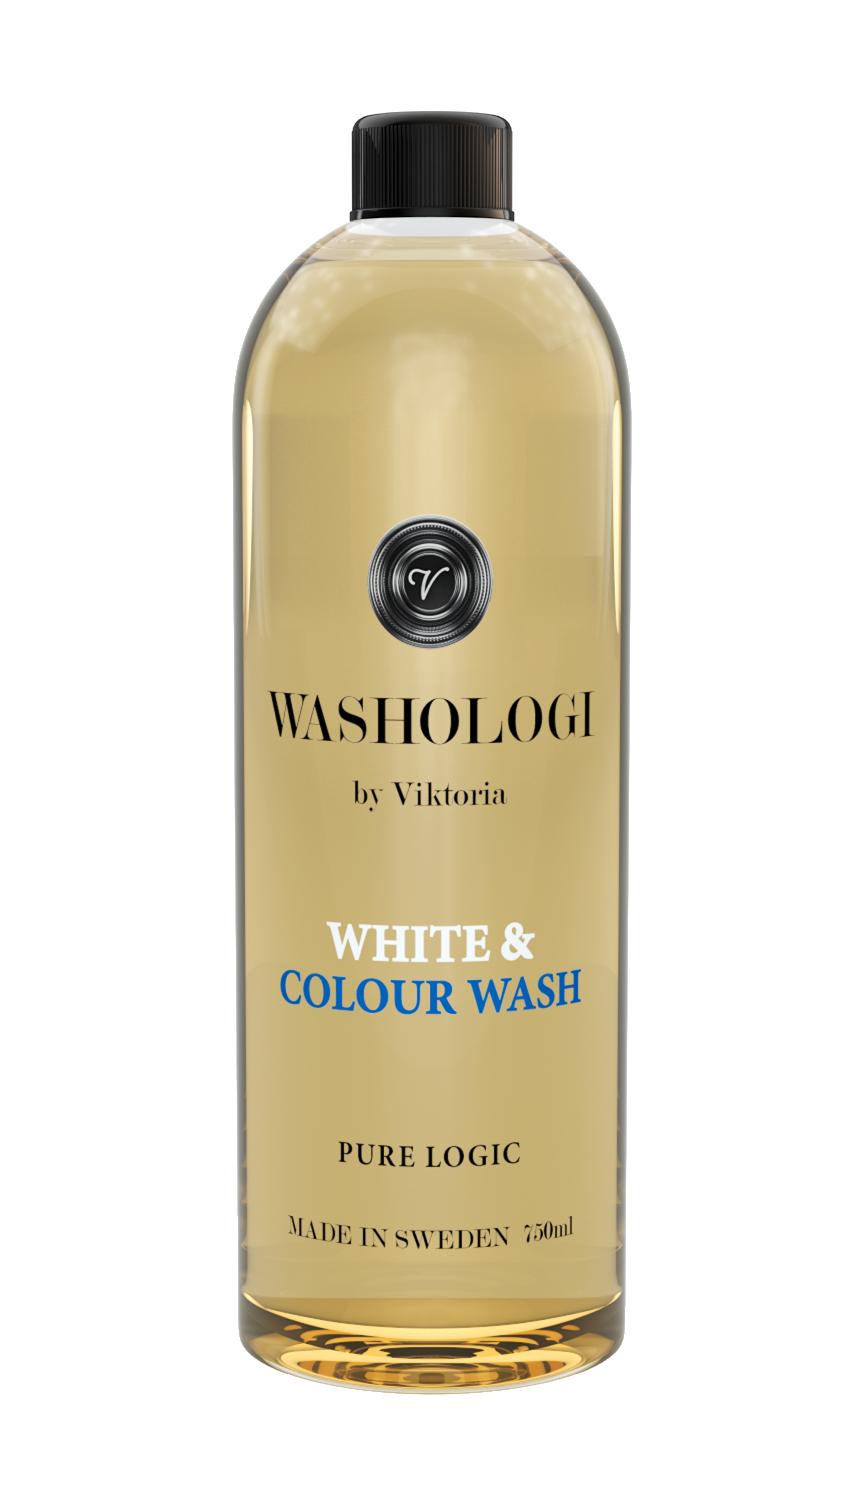 White & Colour wash 1pc 750ml by viktoria